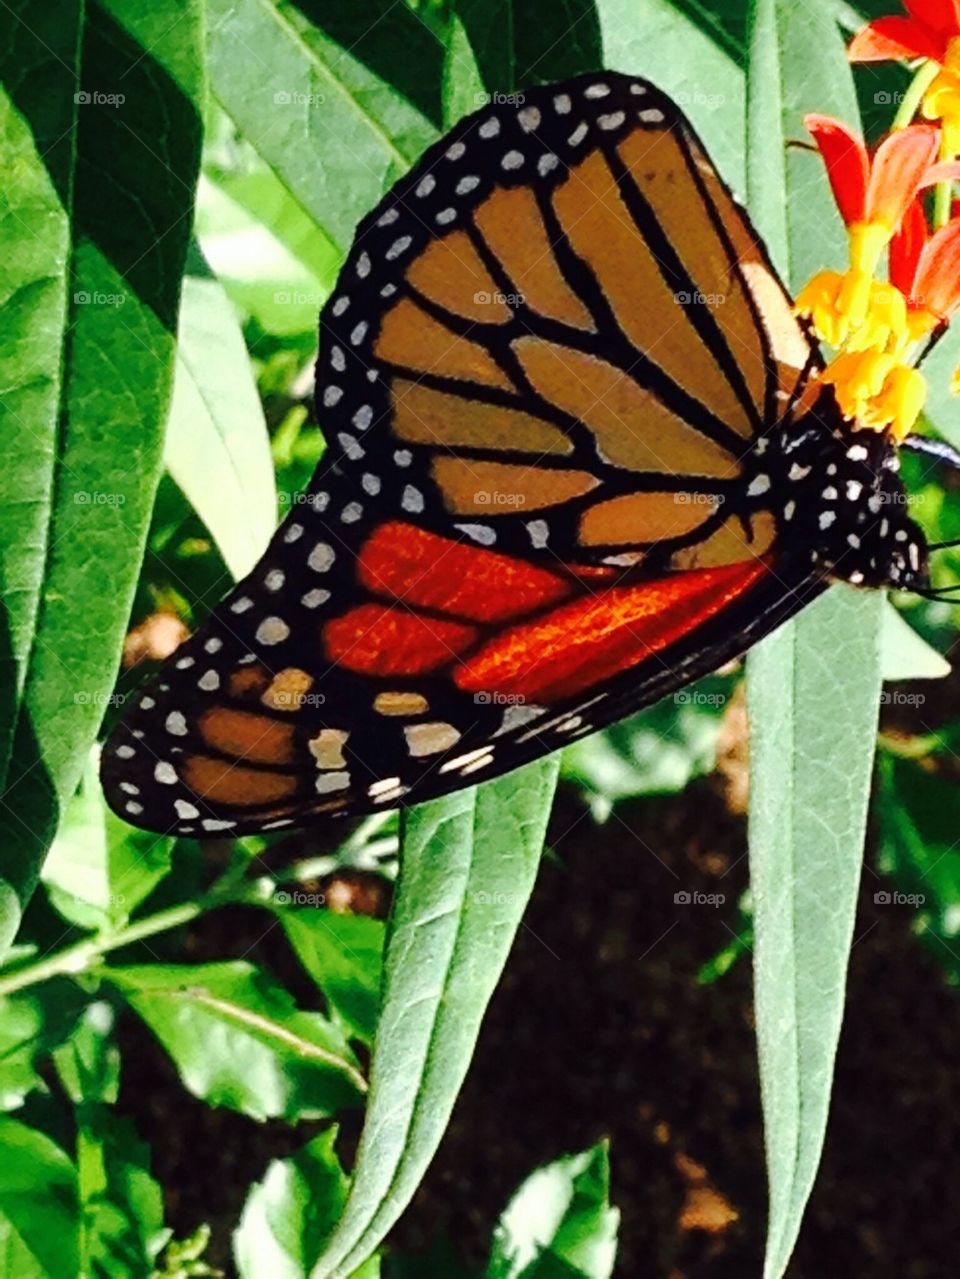 Monarch in Milkweed